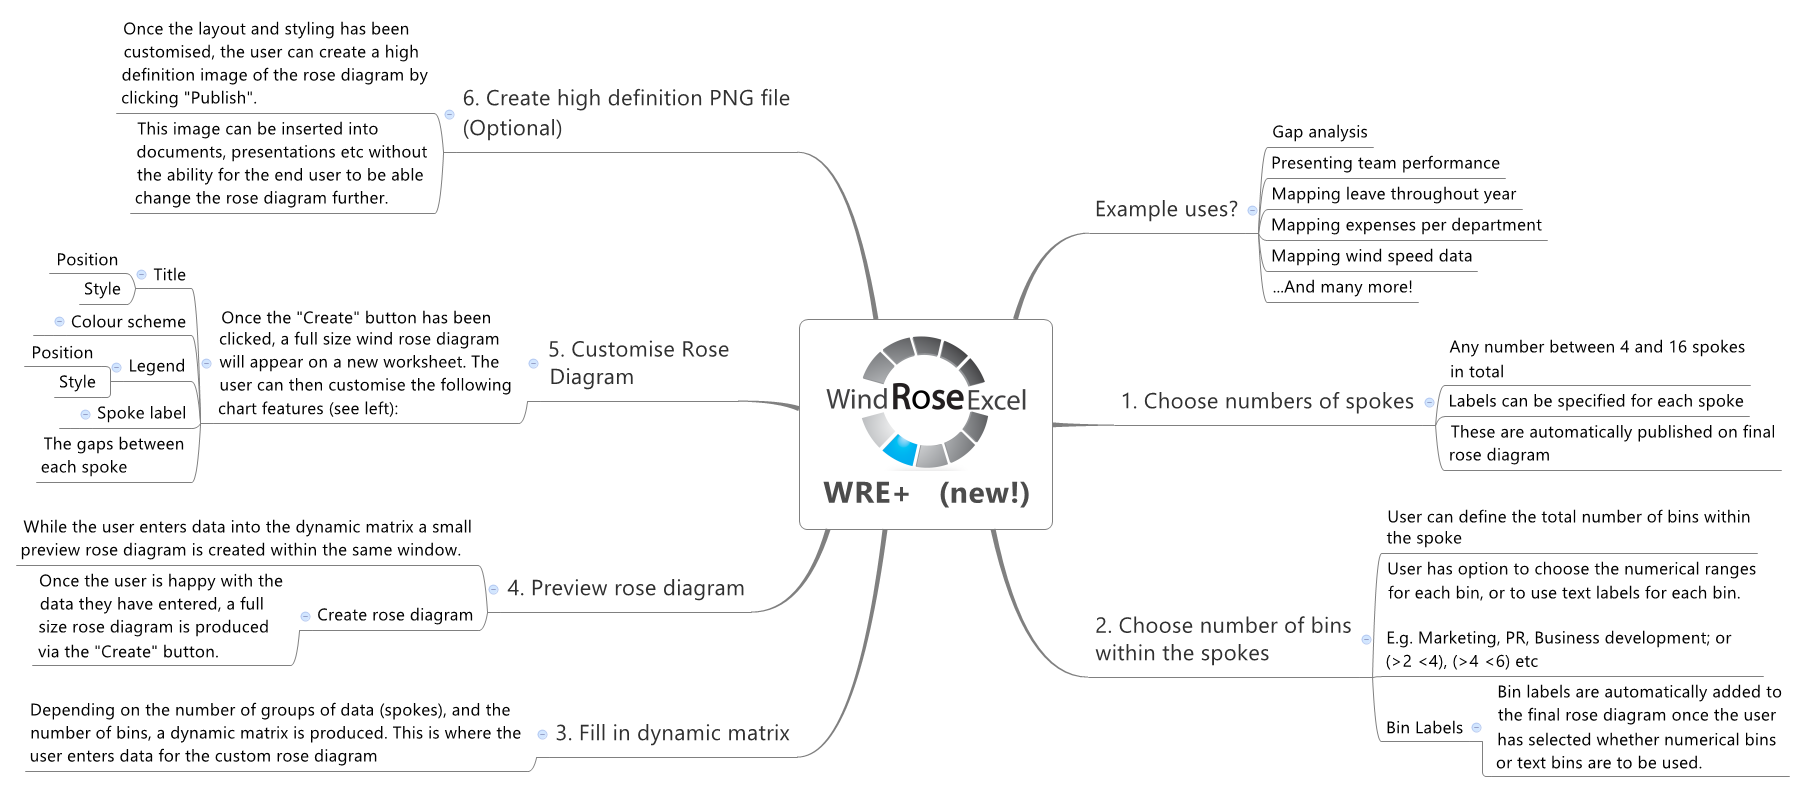 rose diagram software for mac